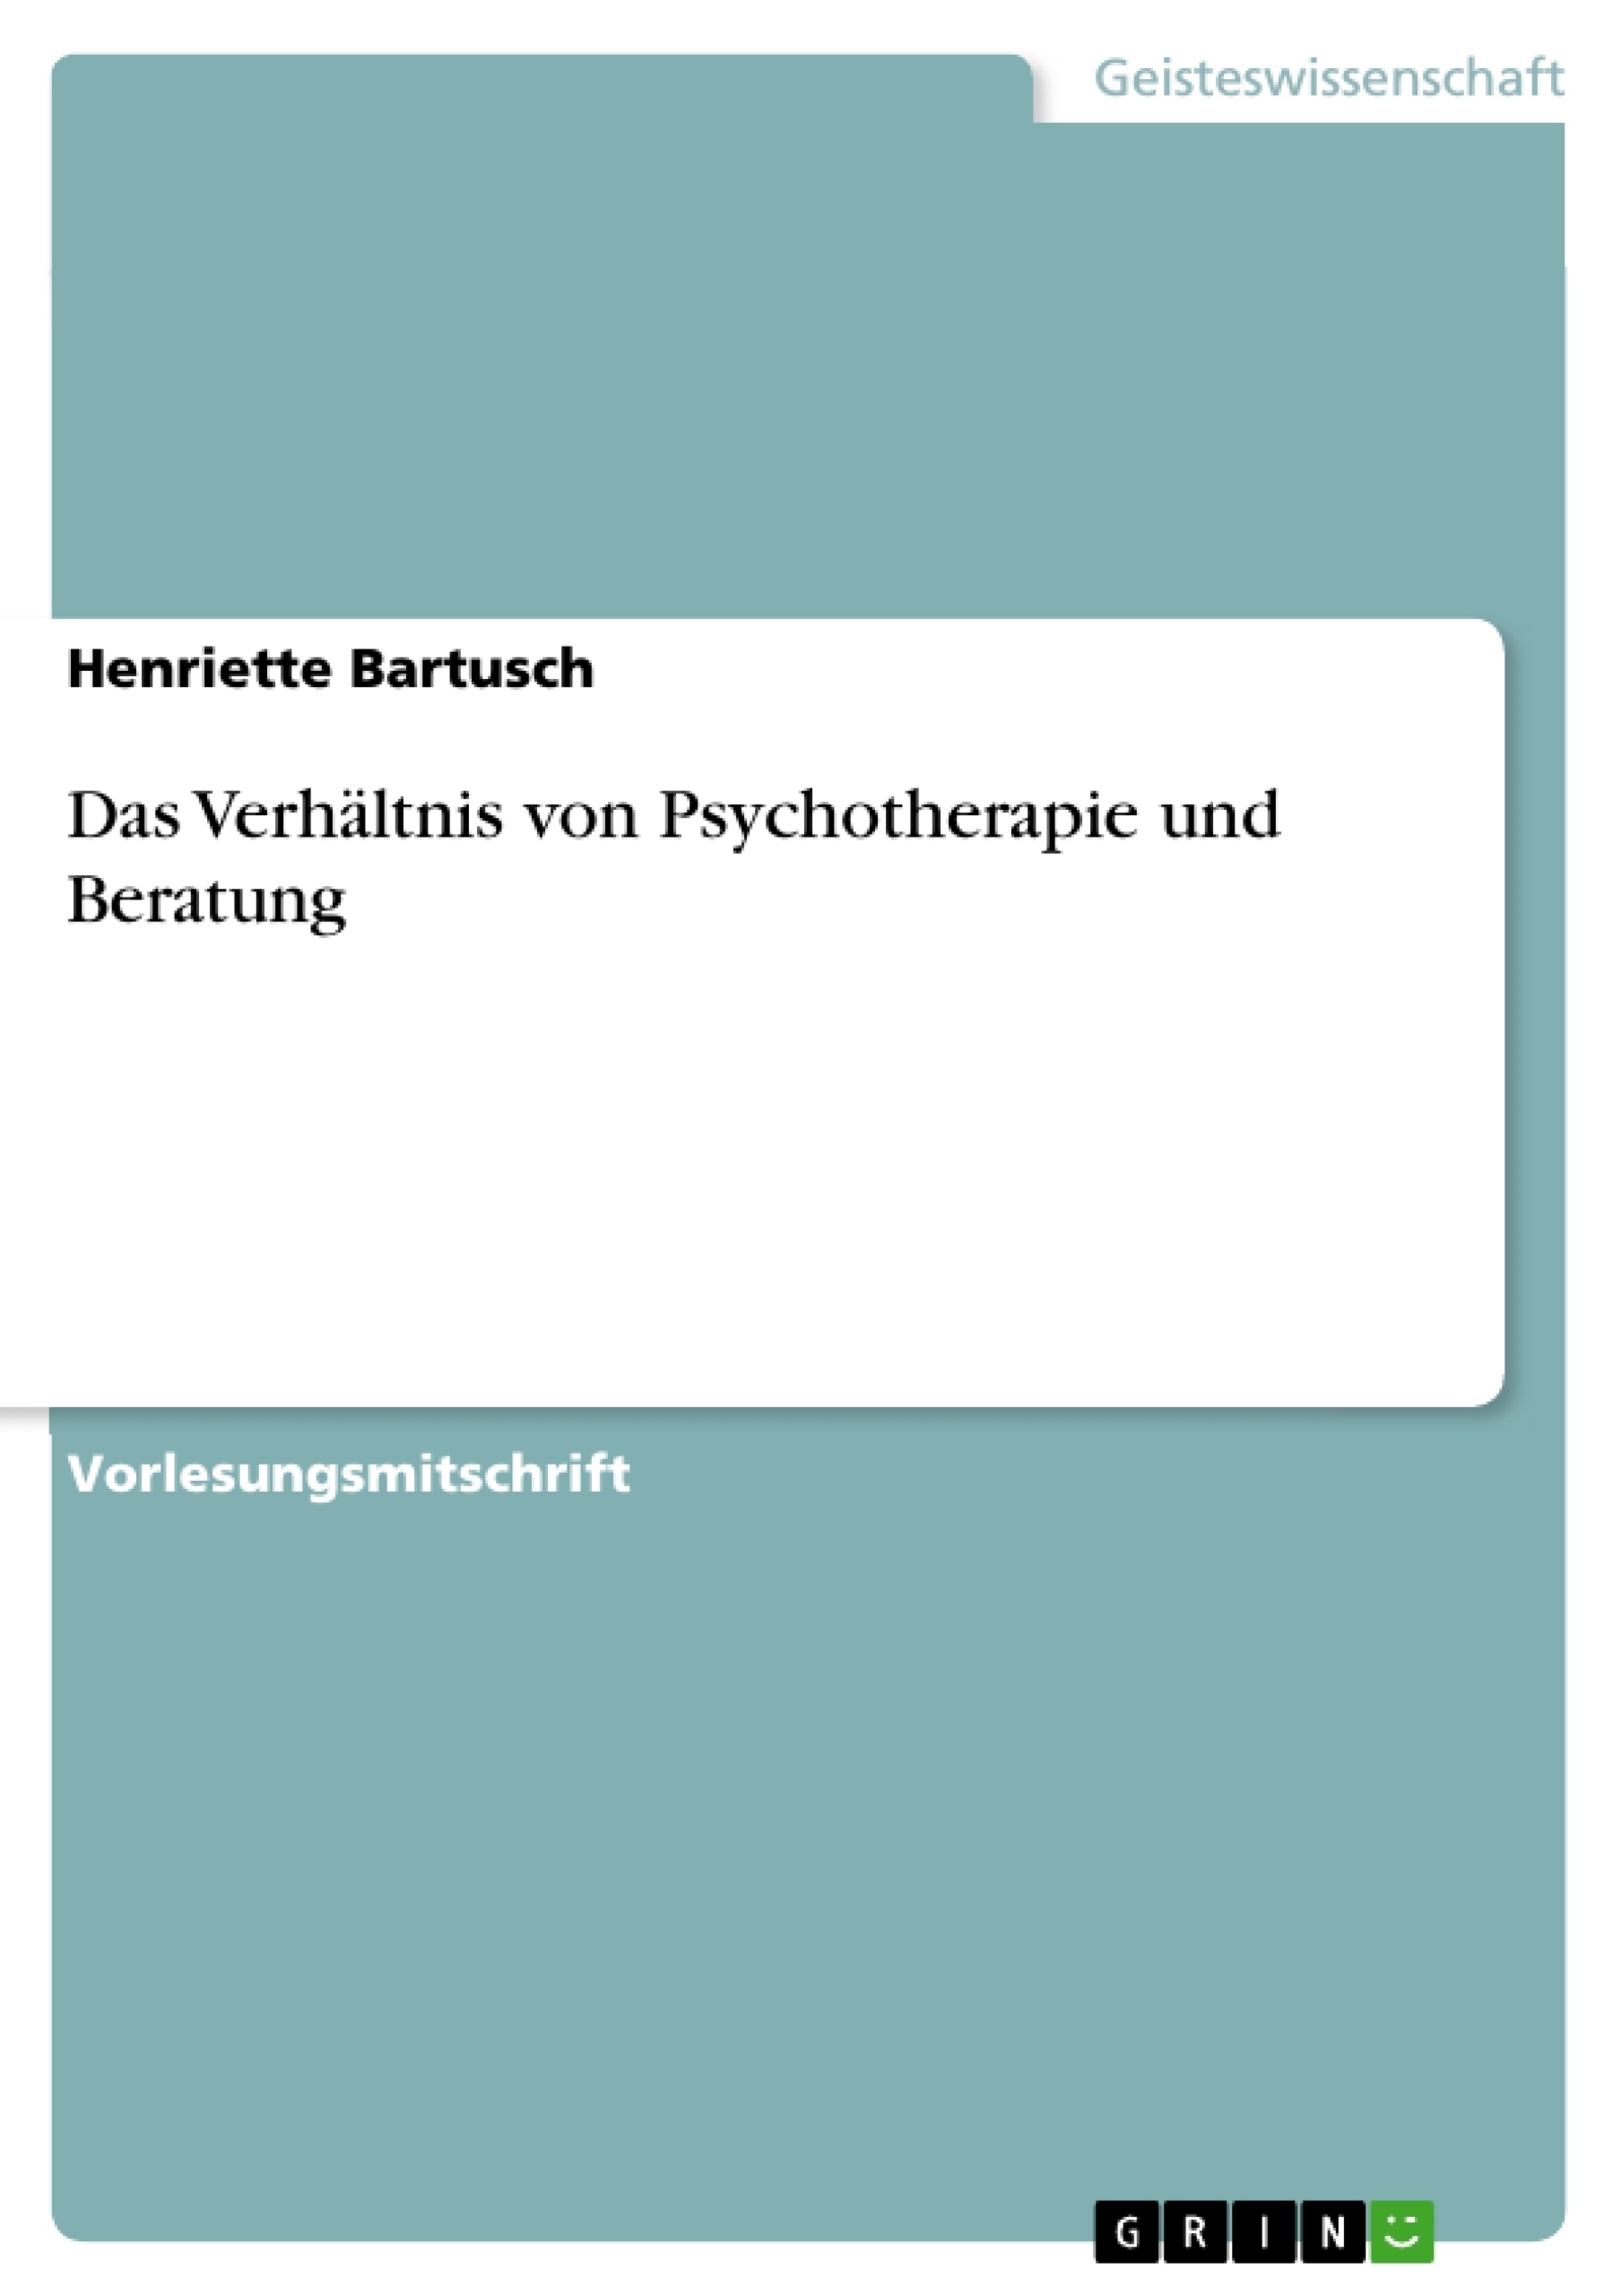 Title: Das Verhältnis von Psychotherapie und Beratung